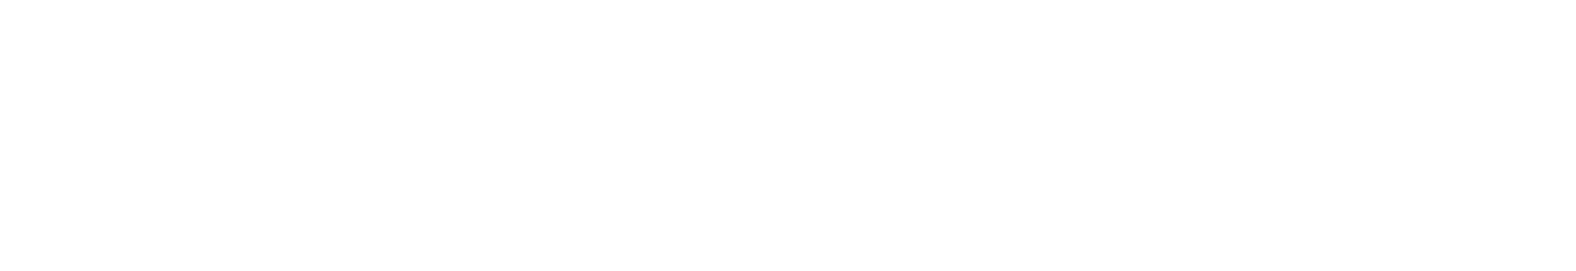 Euronet Worldwide
 Logo groß für dunkle Hintergründe (transparentes PNG)